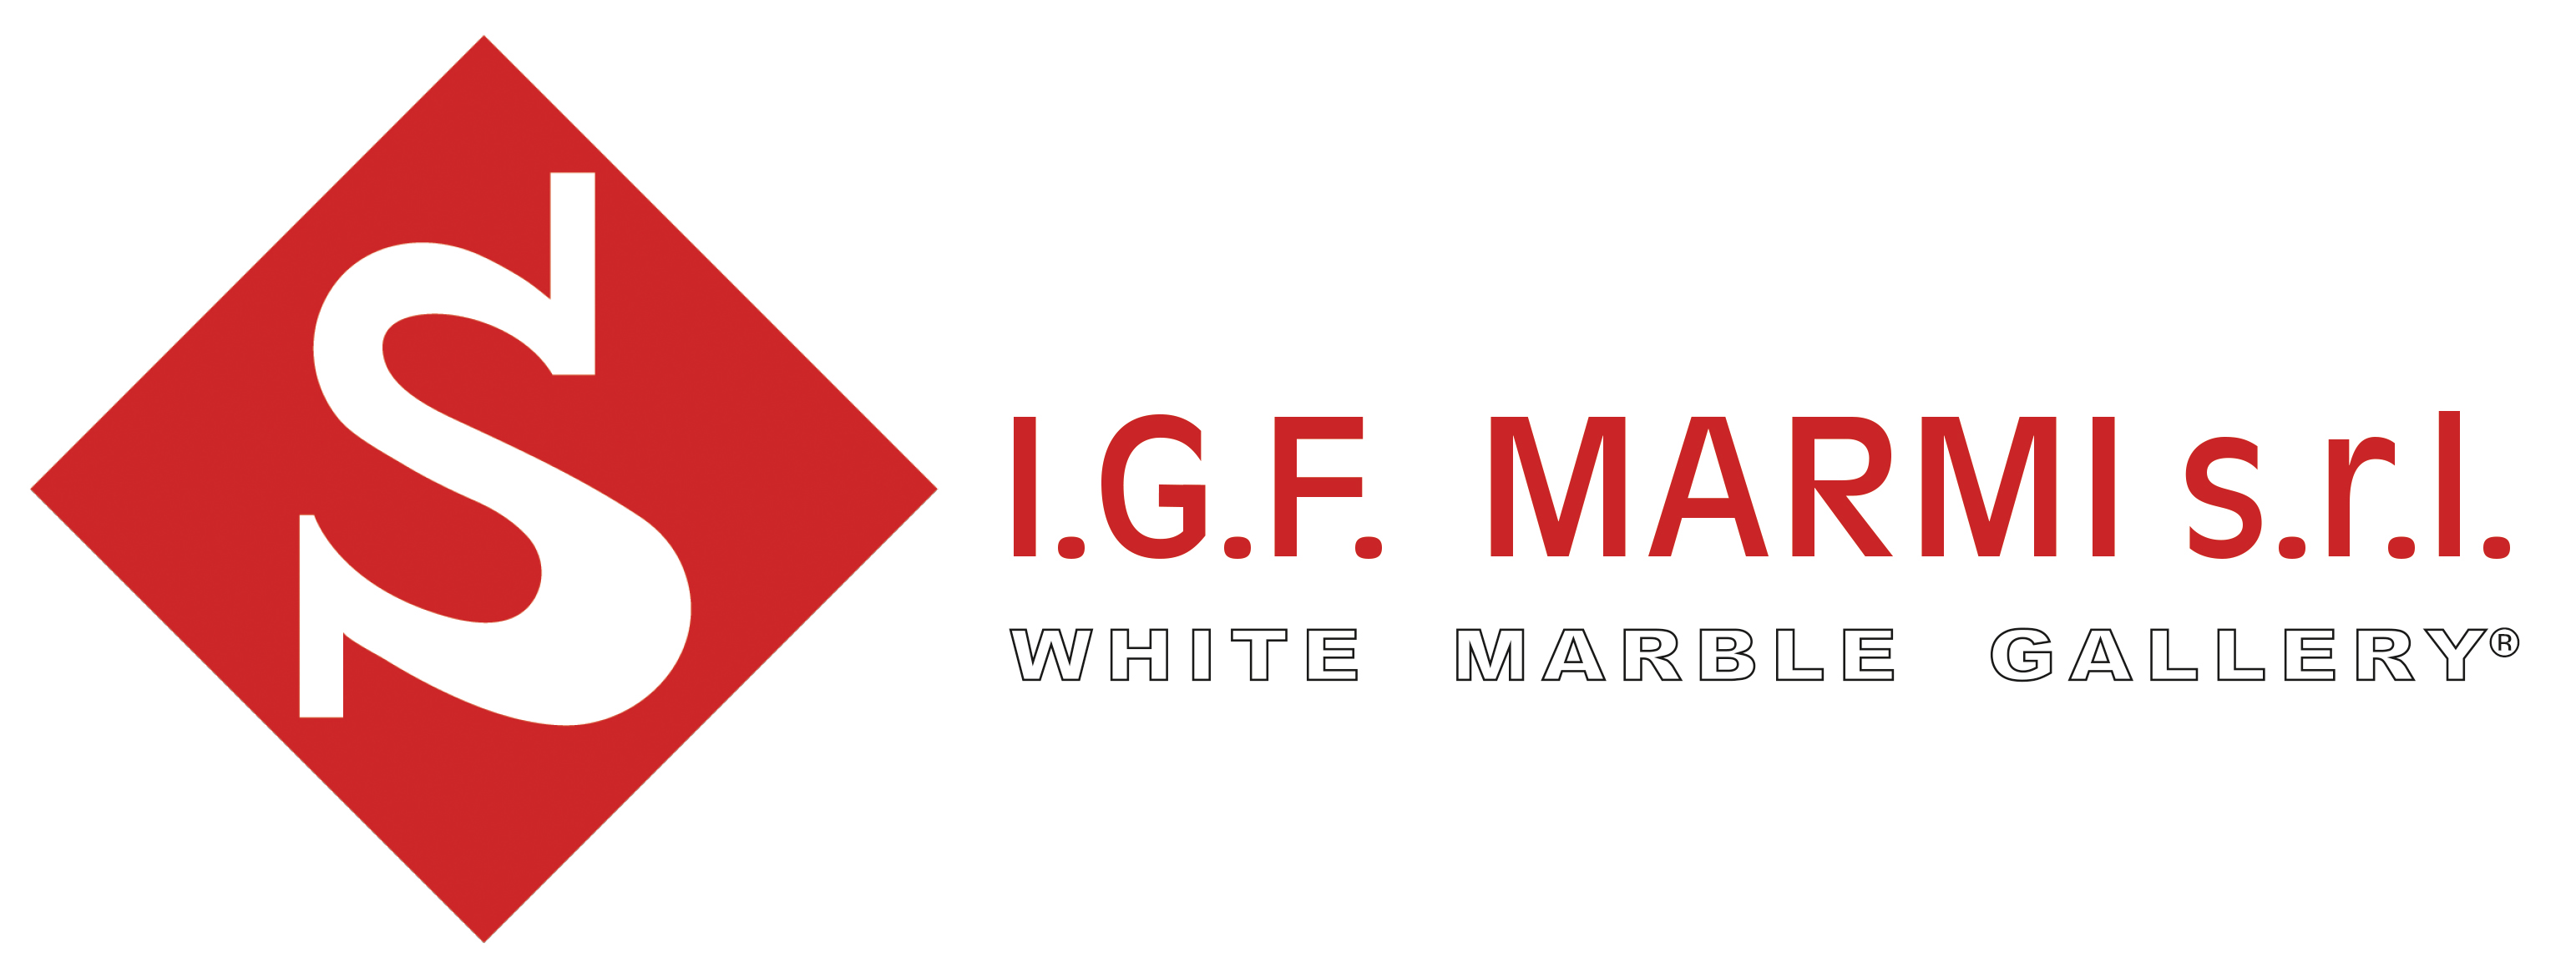 IGF Marmi